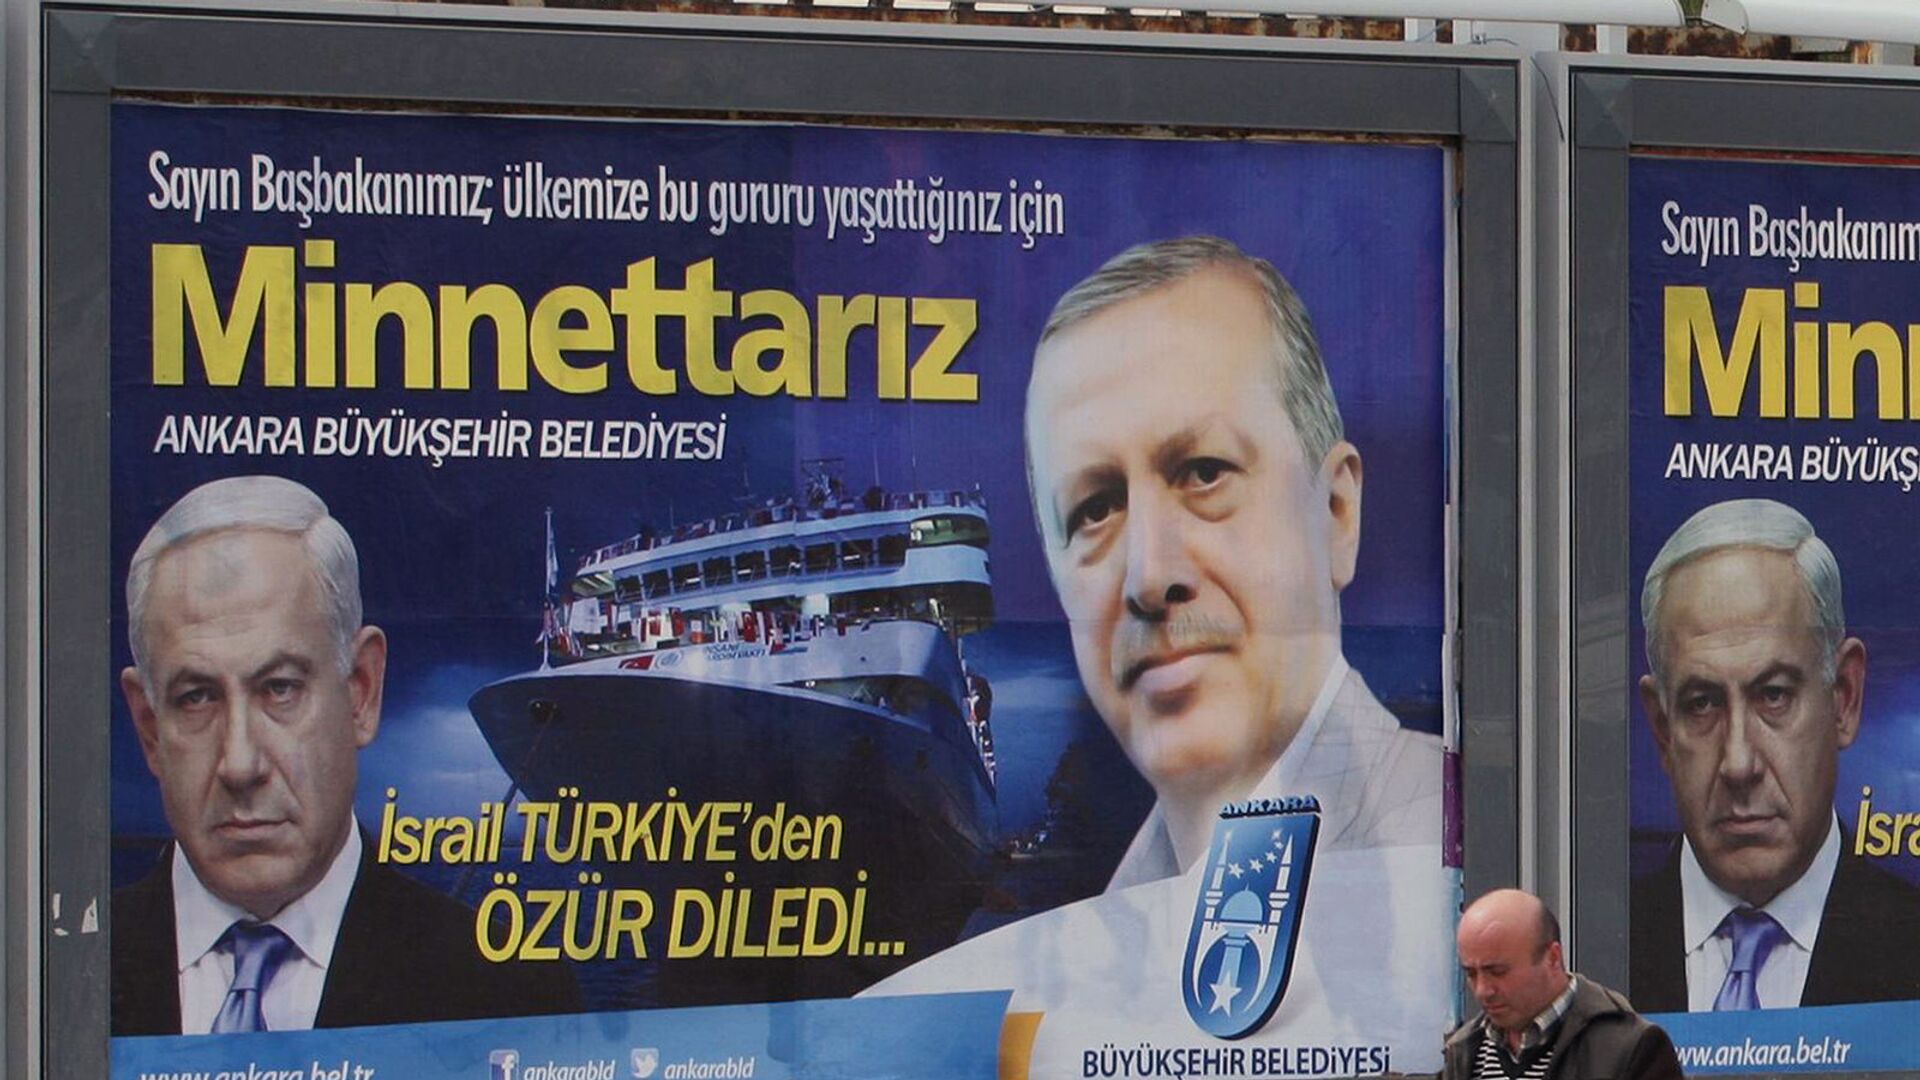 Рекламный щит с фотографиями Биньямина Нетаньяху и Реджепа Тайипа Эрдогана, размещенный на главной улице у муниципалитета Анкары (25 марта 2013). Турция - Sputnik Армения, 1920, 29.04.2021